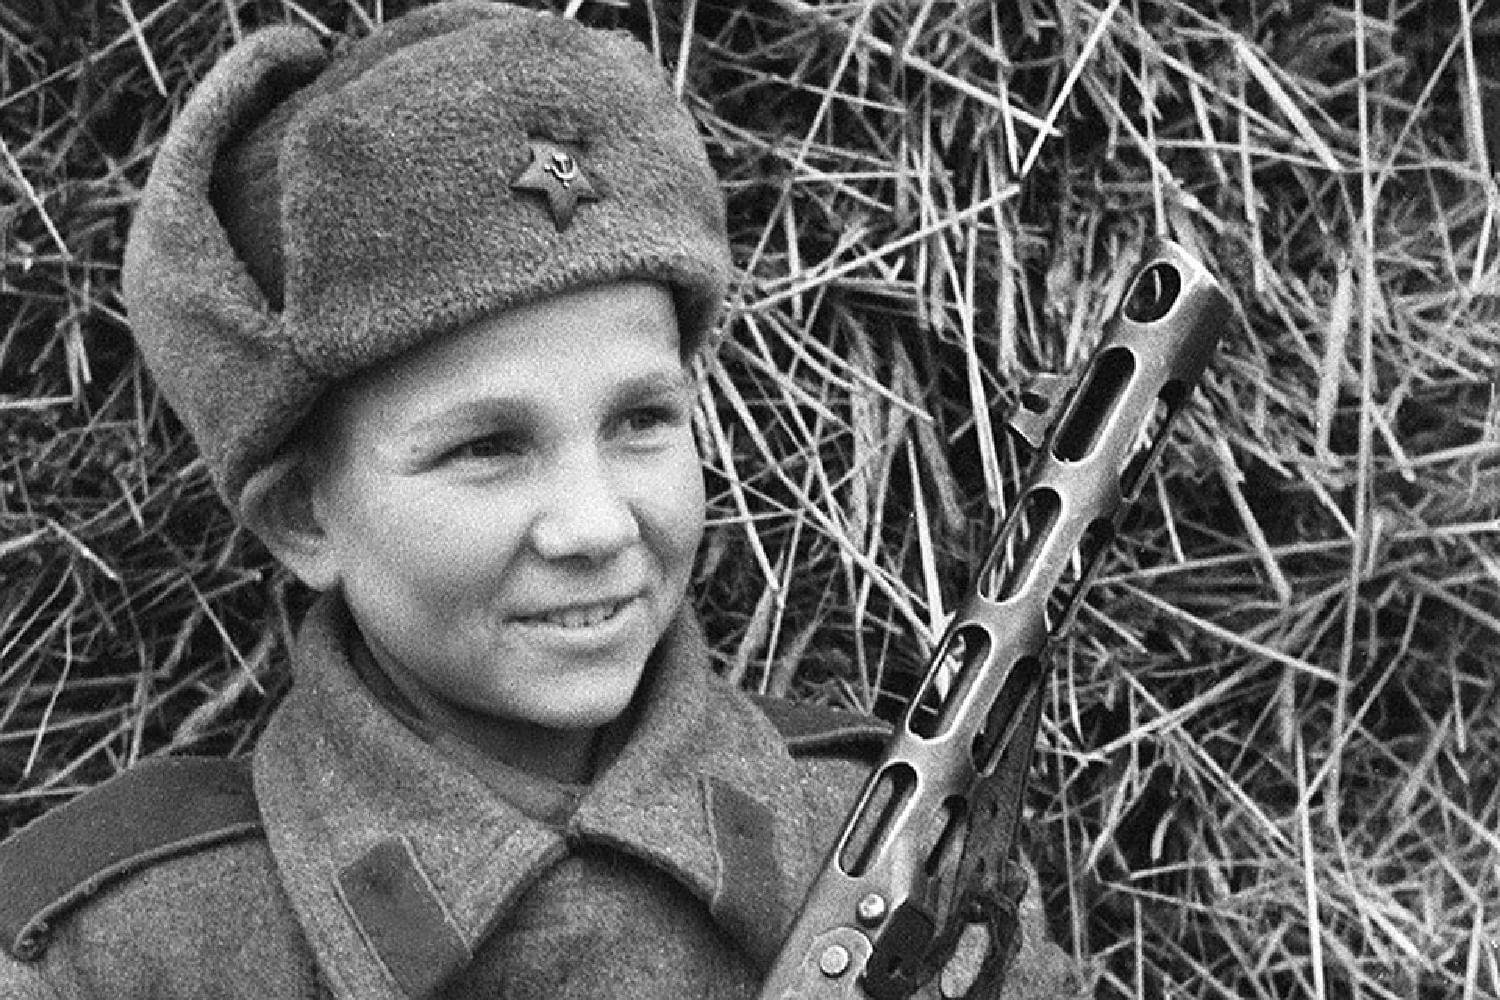 Фото детей в великой отечественной войне